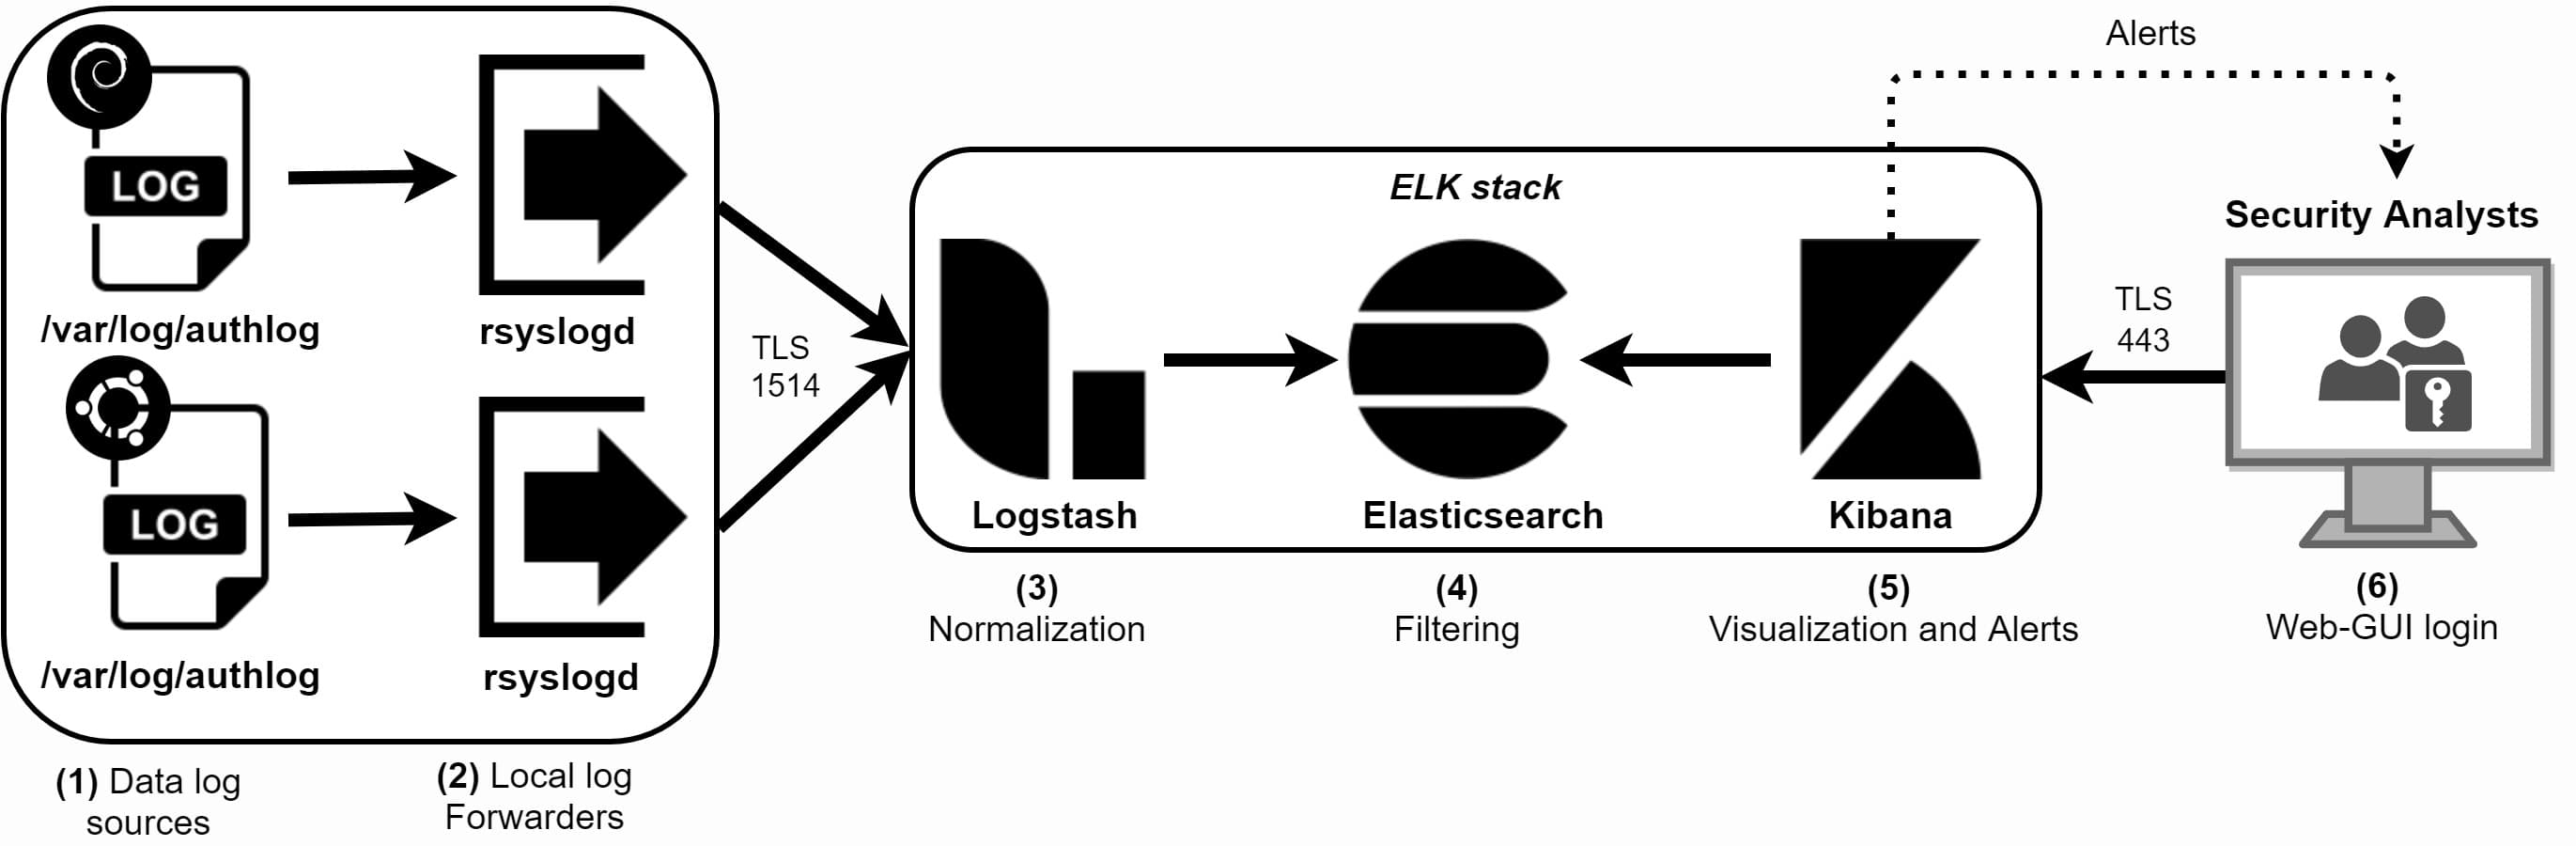 rsyslog-elk-stack-dataflow